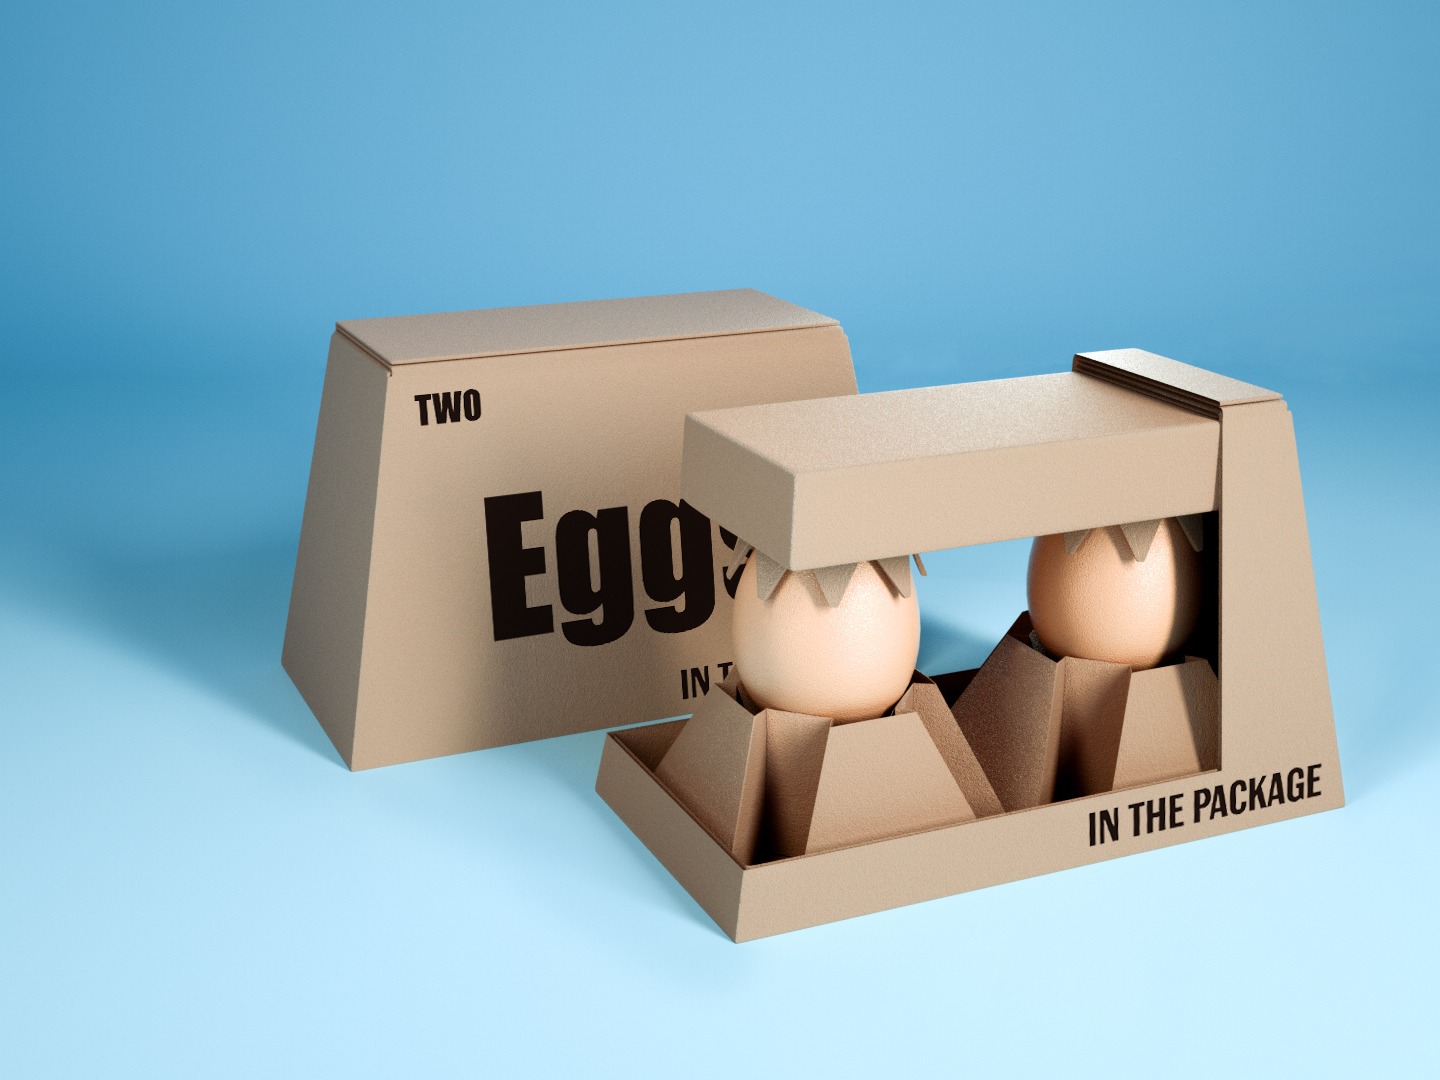 卡纸鸡蛋防摔包装设计图片